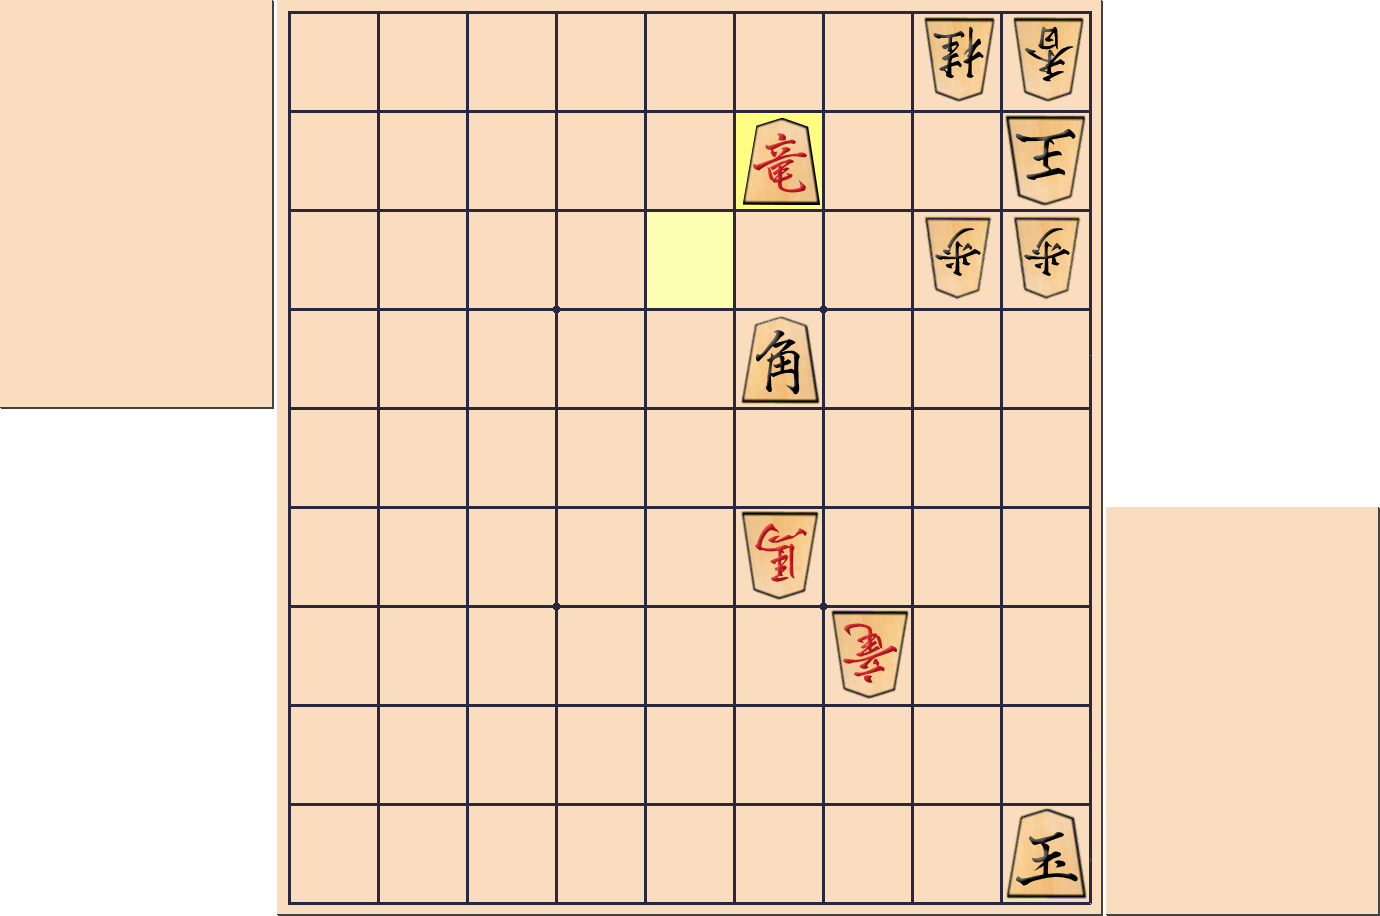 【将棋用語】タダの合駒が「無駄合い」とならない部分図